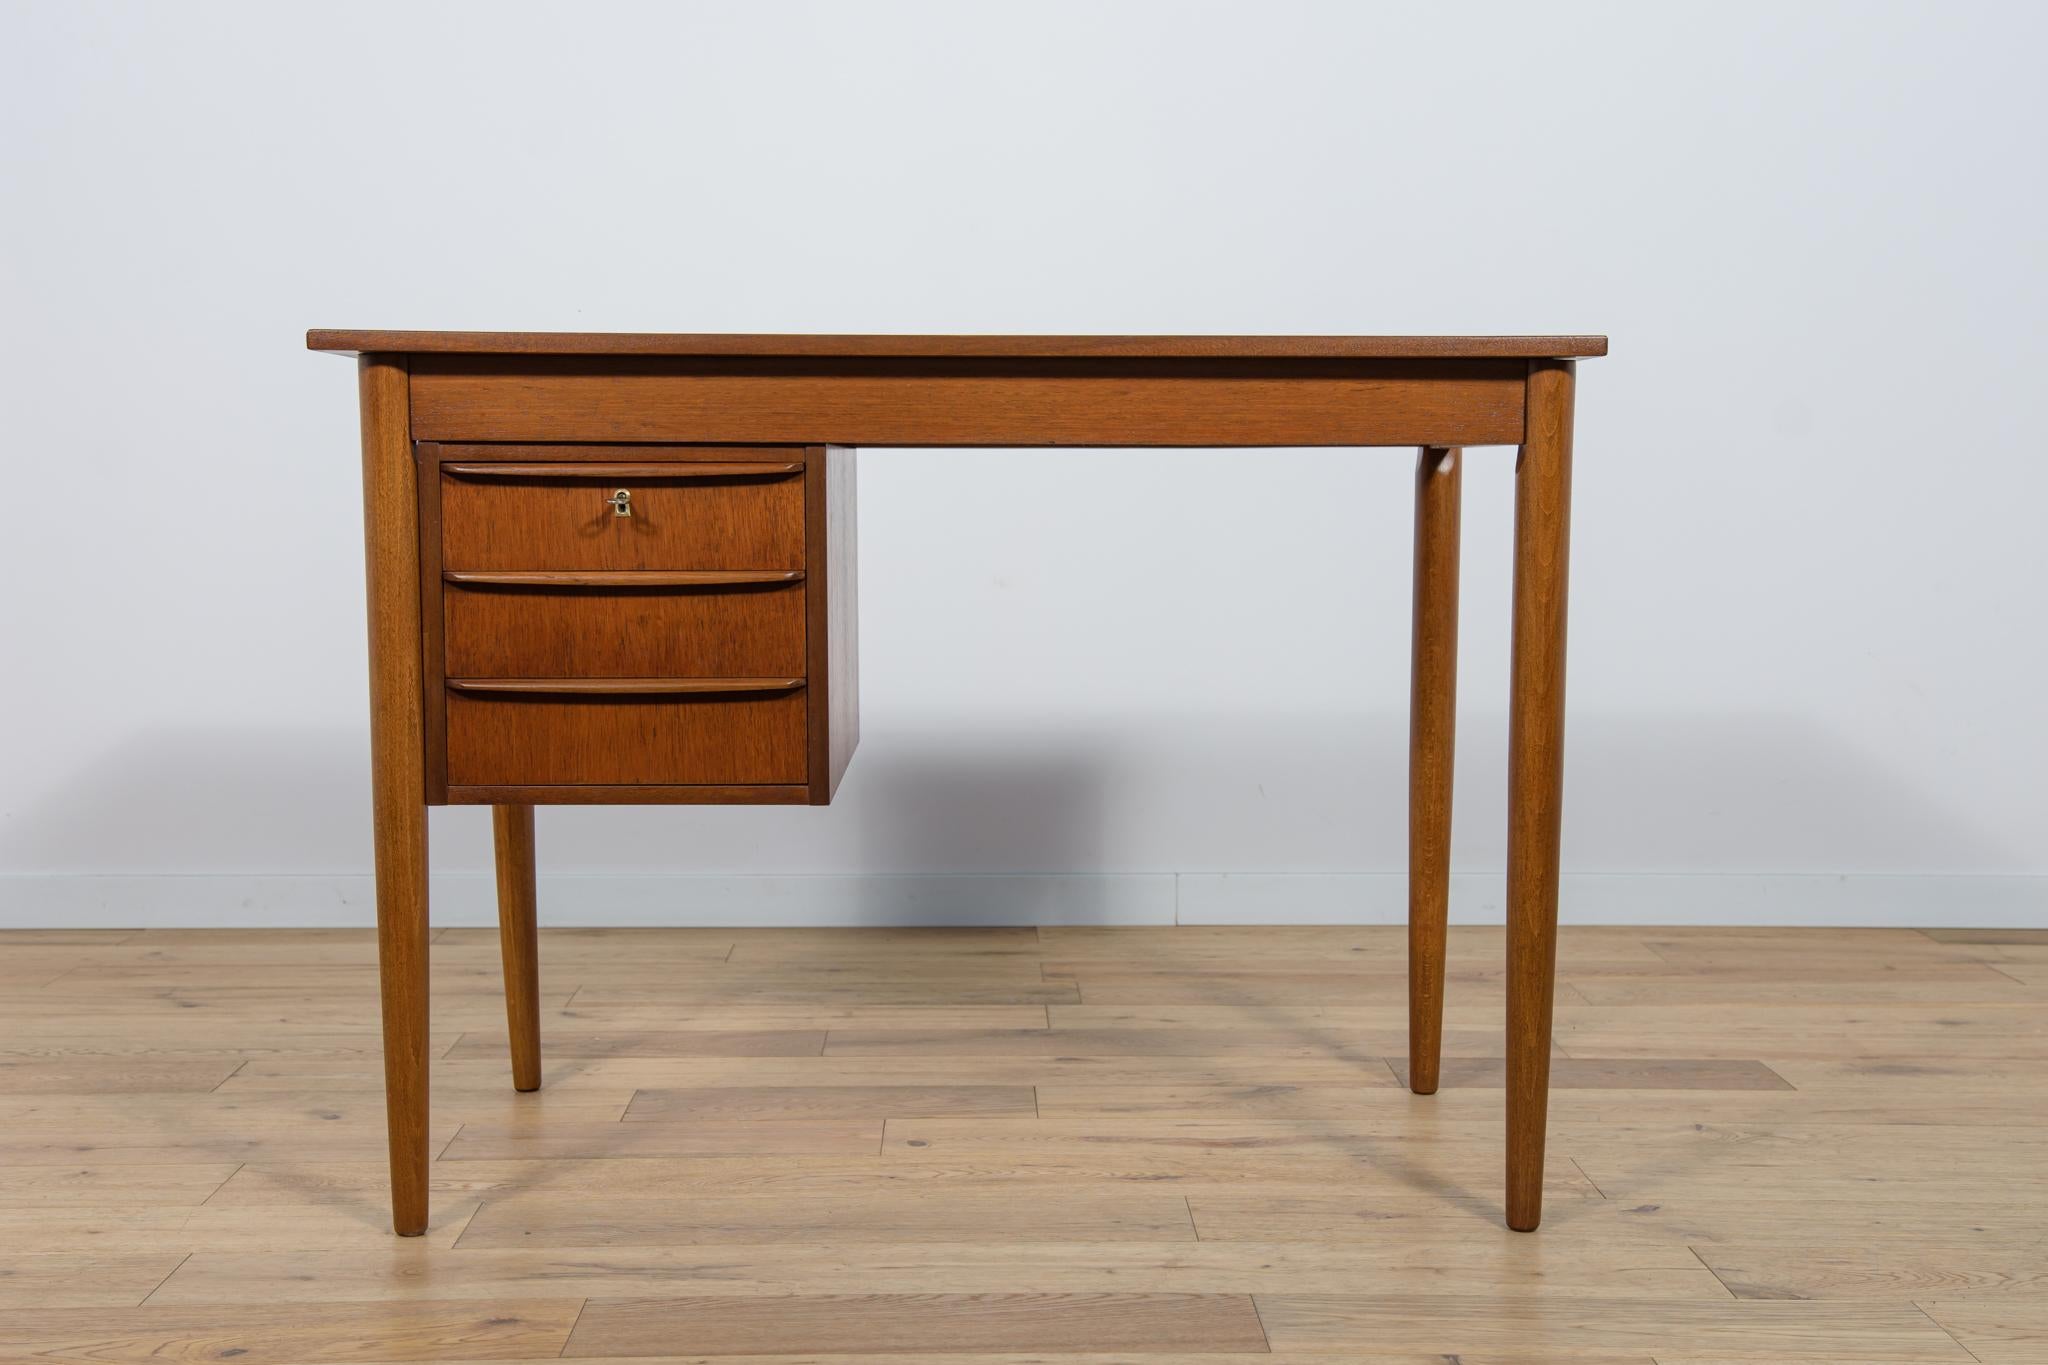 
Ein kleiner Schreibtisch, der in den 1960er Jahren in Dänemark hergestellt wurde. Es hat ein Modul mit drei Schubladen mit konturierten Griffen. Der Schreibtisch wurde professionell renoviert und ist aus Teakholz gefertigt. Es wurde von der alten